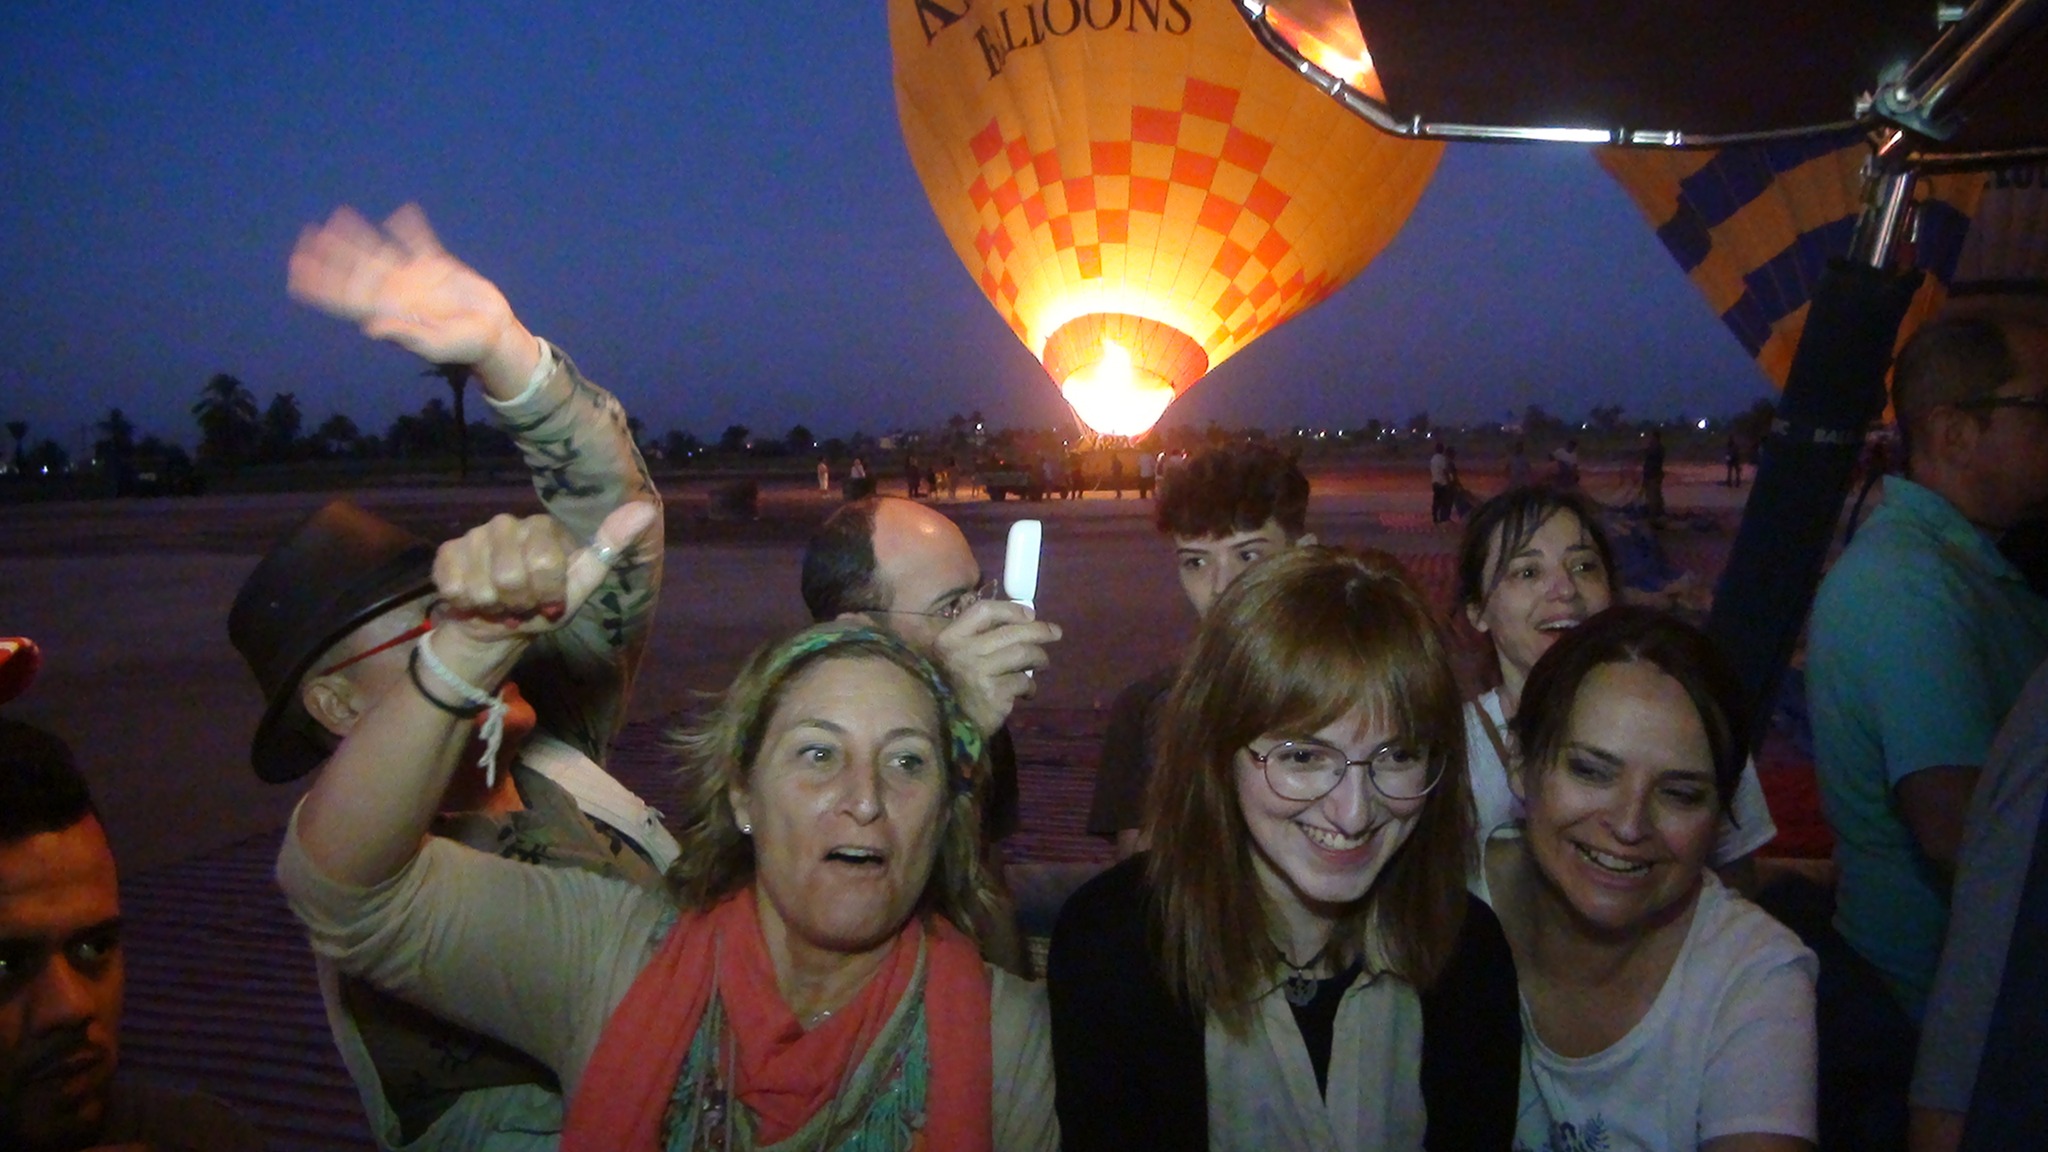 فرحة كبيرة بين الأجانب داخل البالون